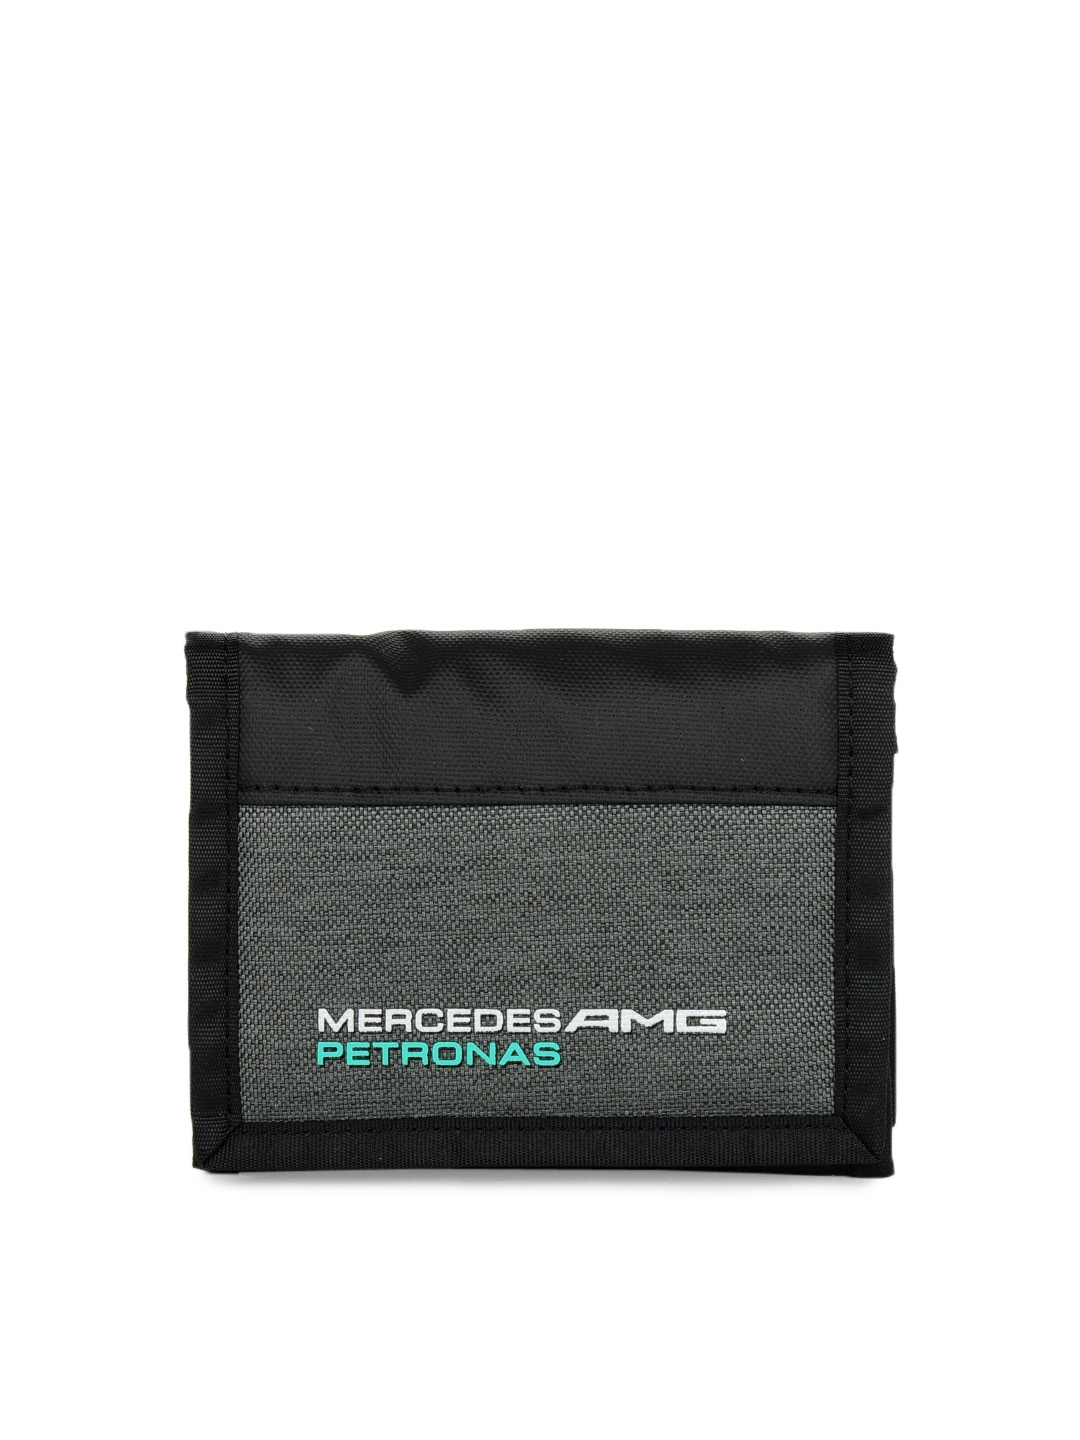 Mercedes AMG Petronas Wallet 